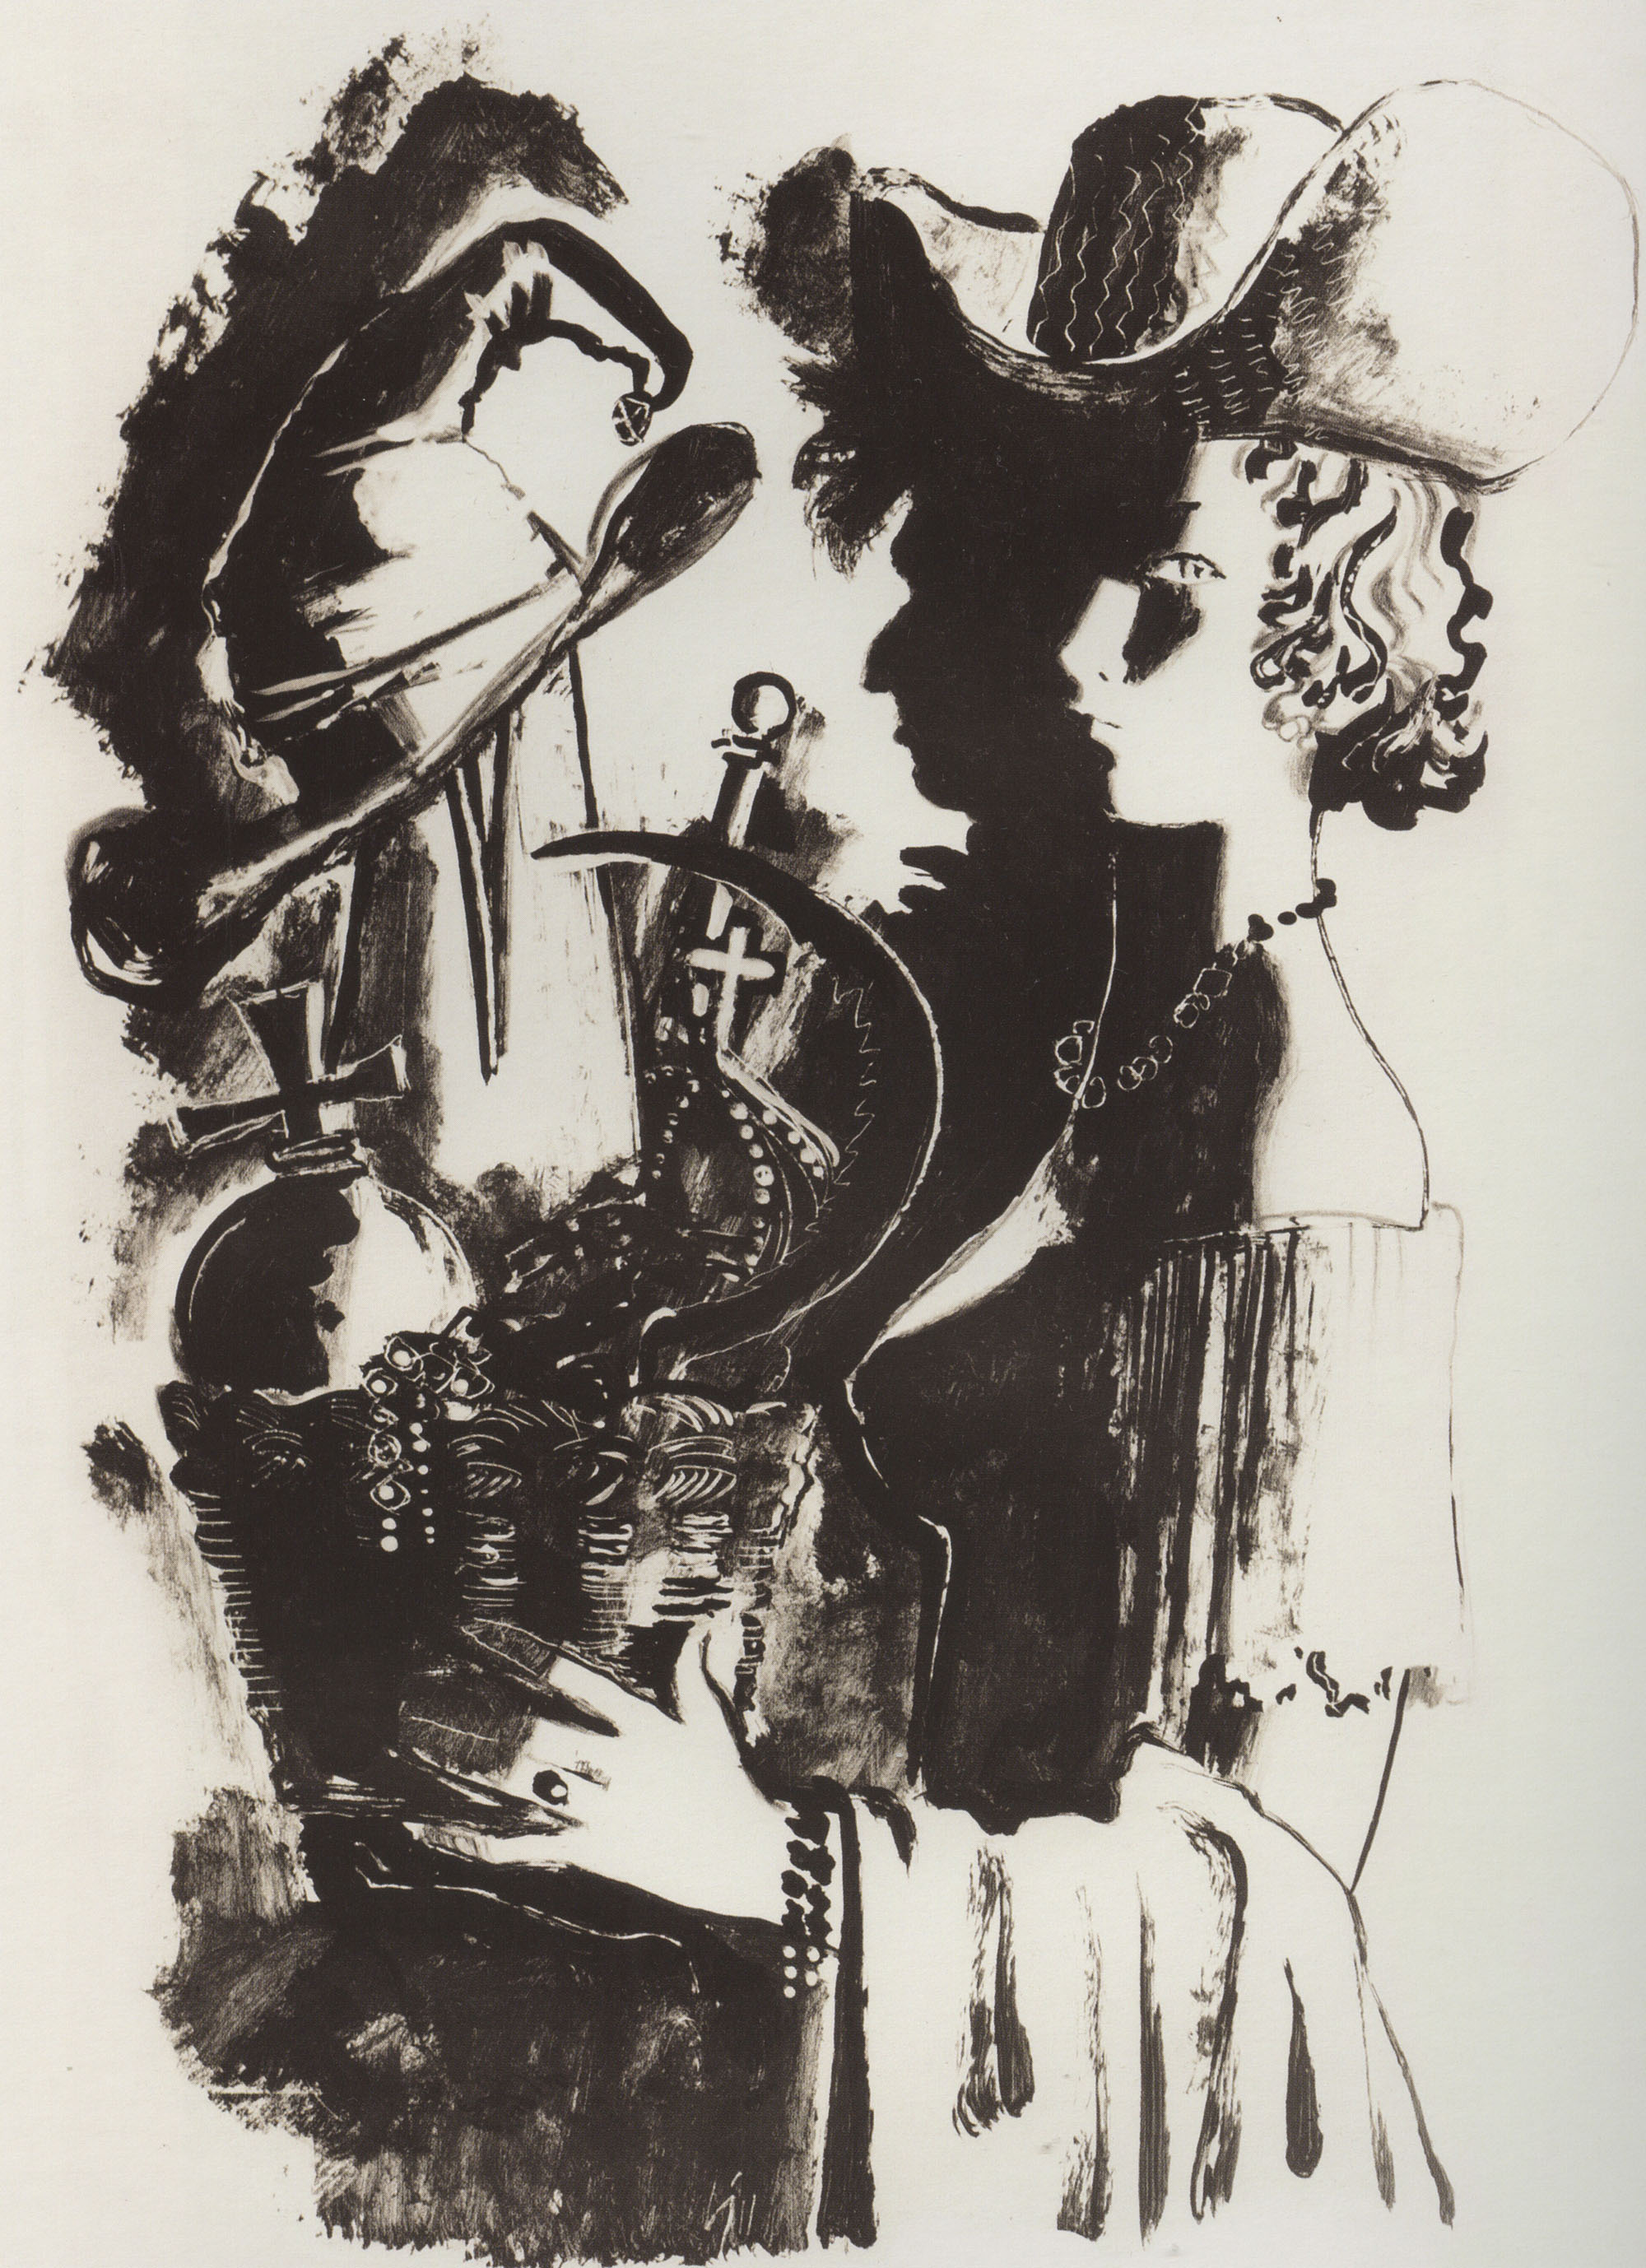 Андрей Пахомов. Франсиско де Каведо. "Избранное". Иллюстрация. 1980.